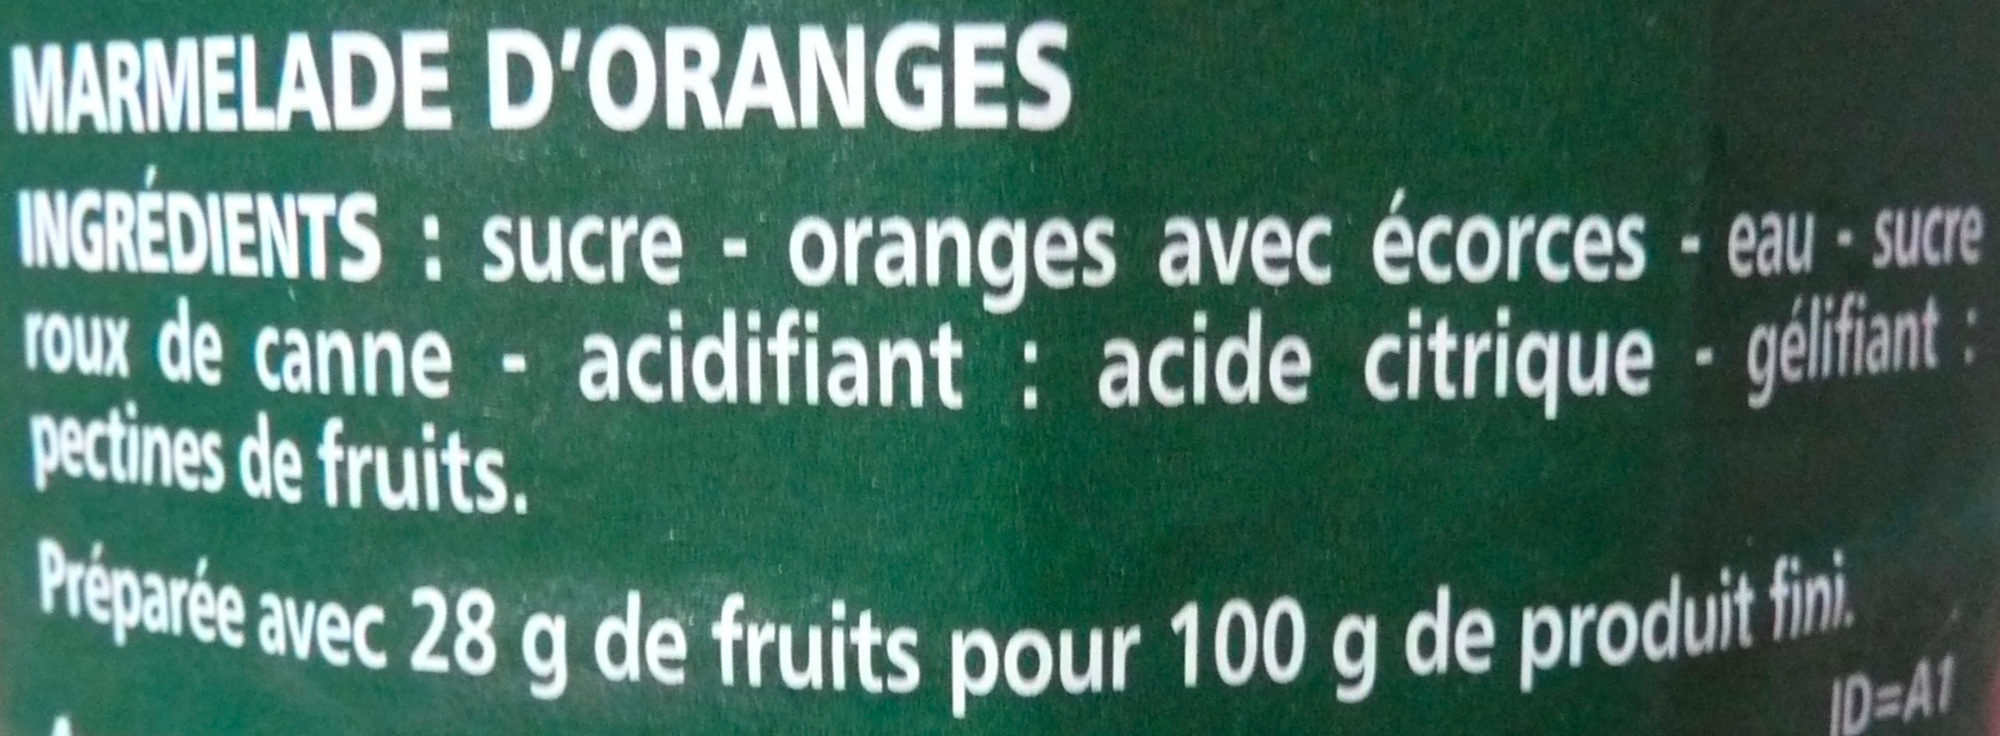 Marmelade oranges - Ingredients - fr